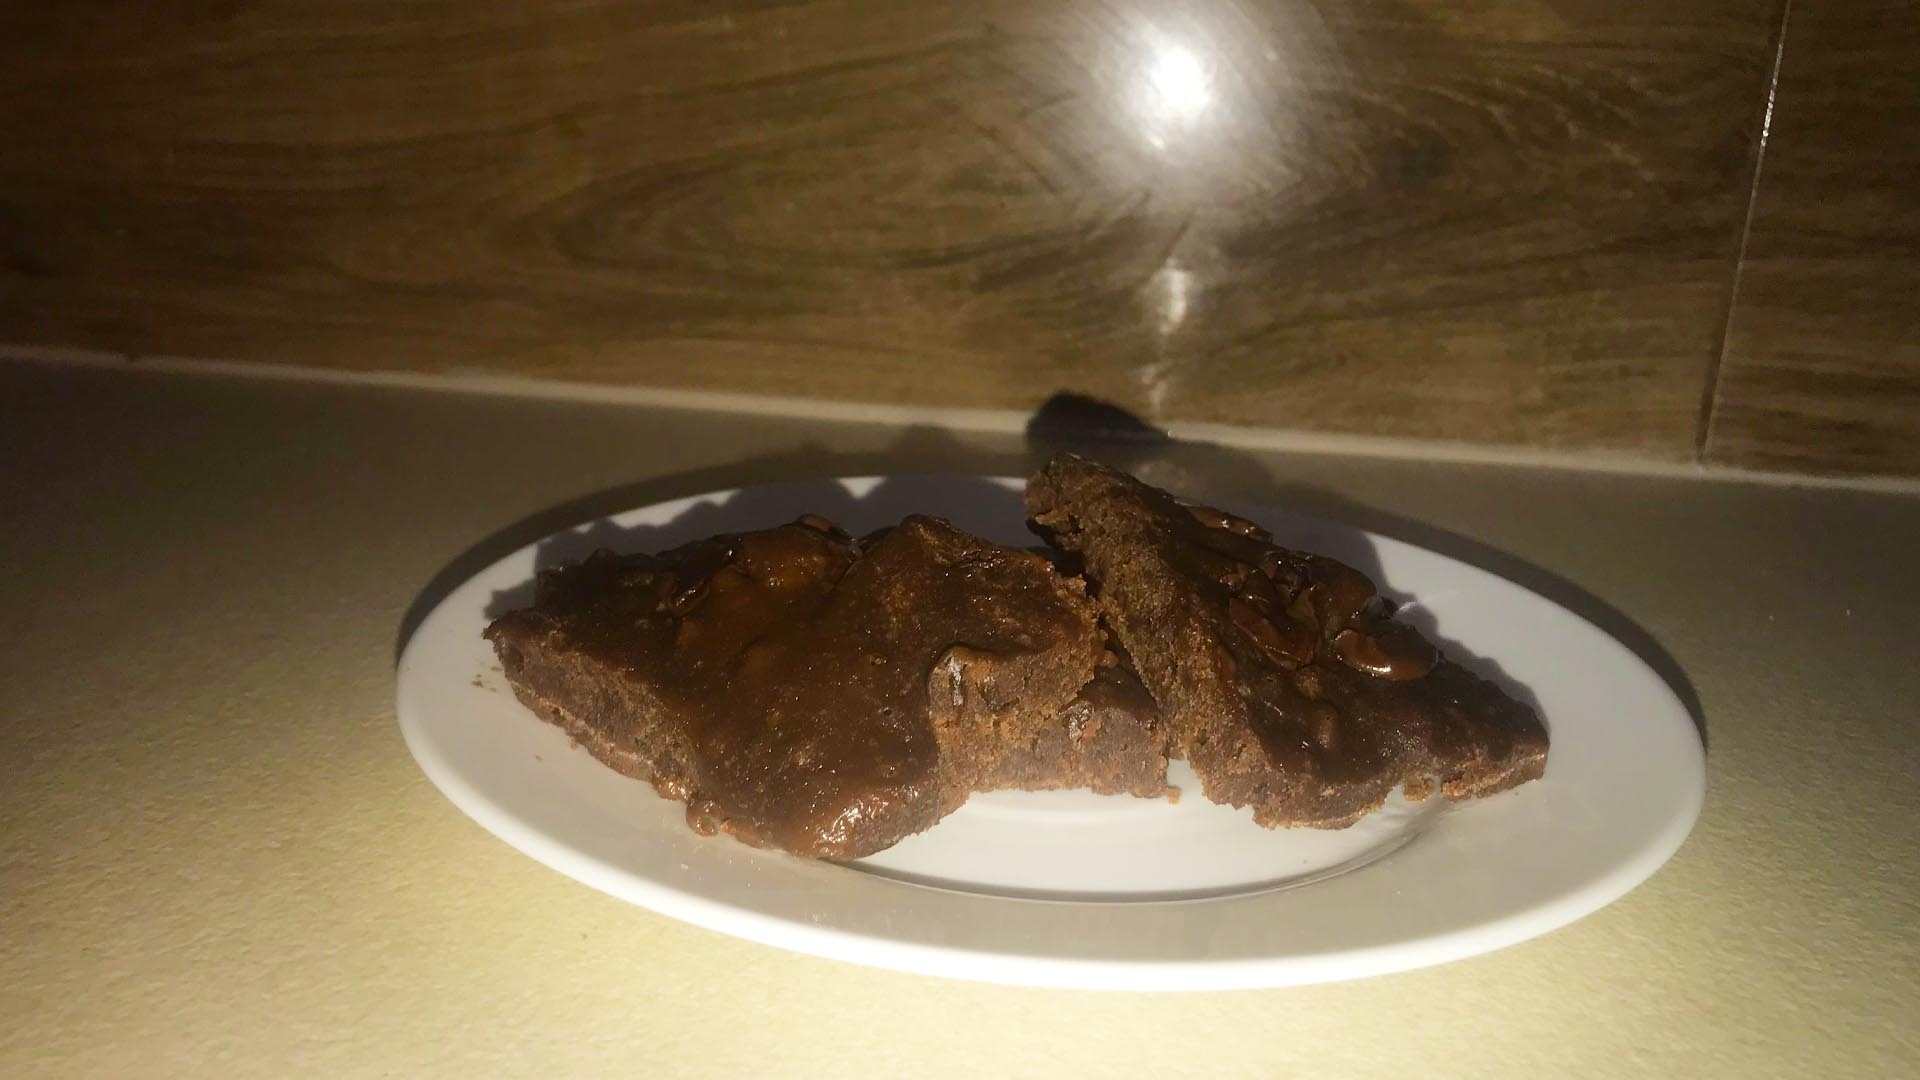 A legjobb mikrós brownie recept 1 perc alatt – Egyszerű brownie recept mikróban